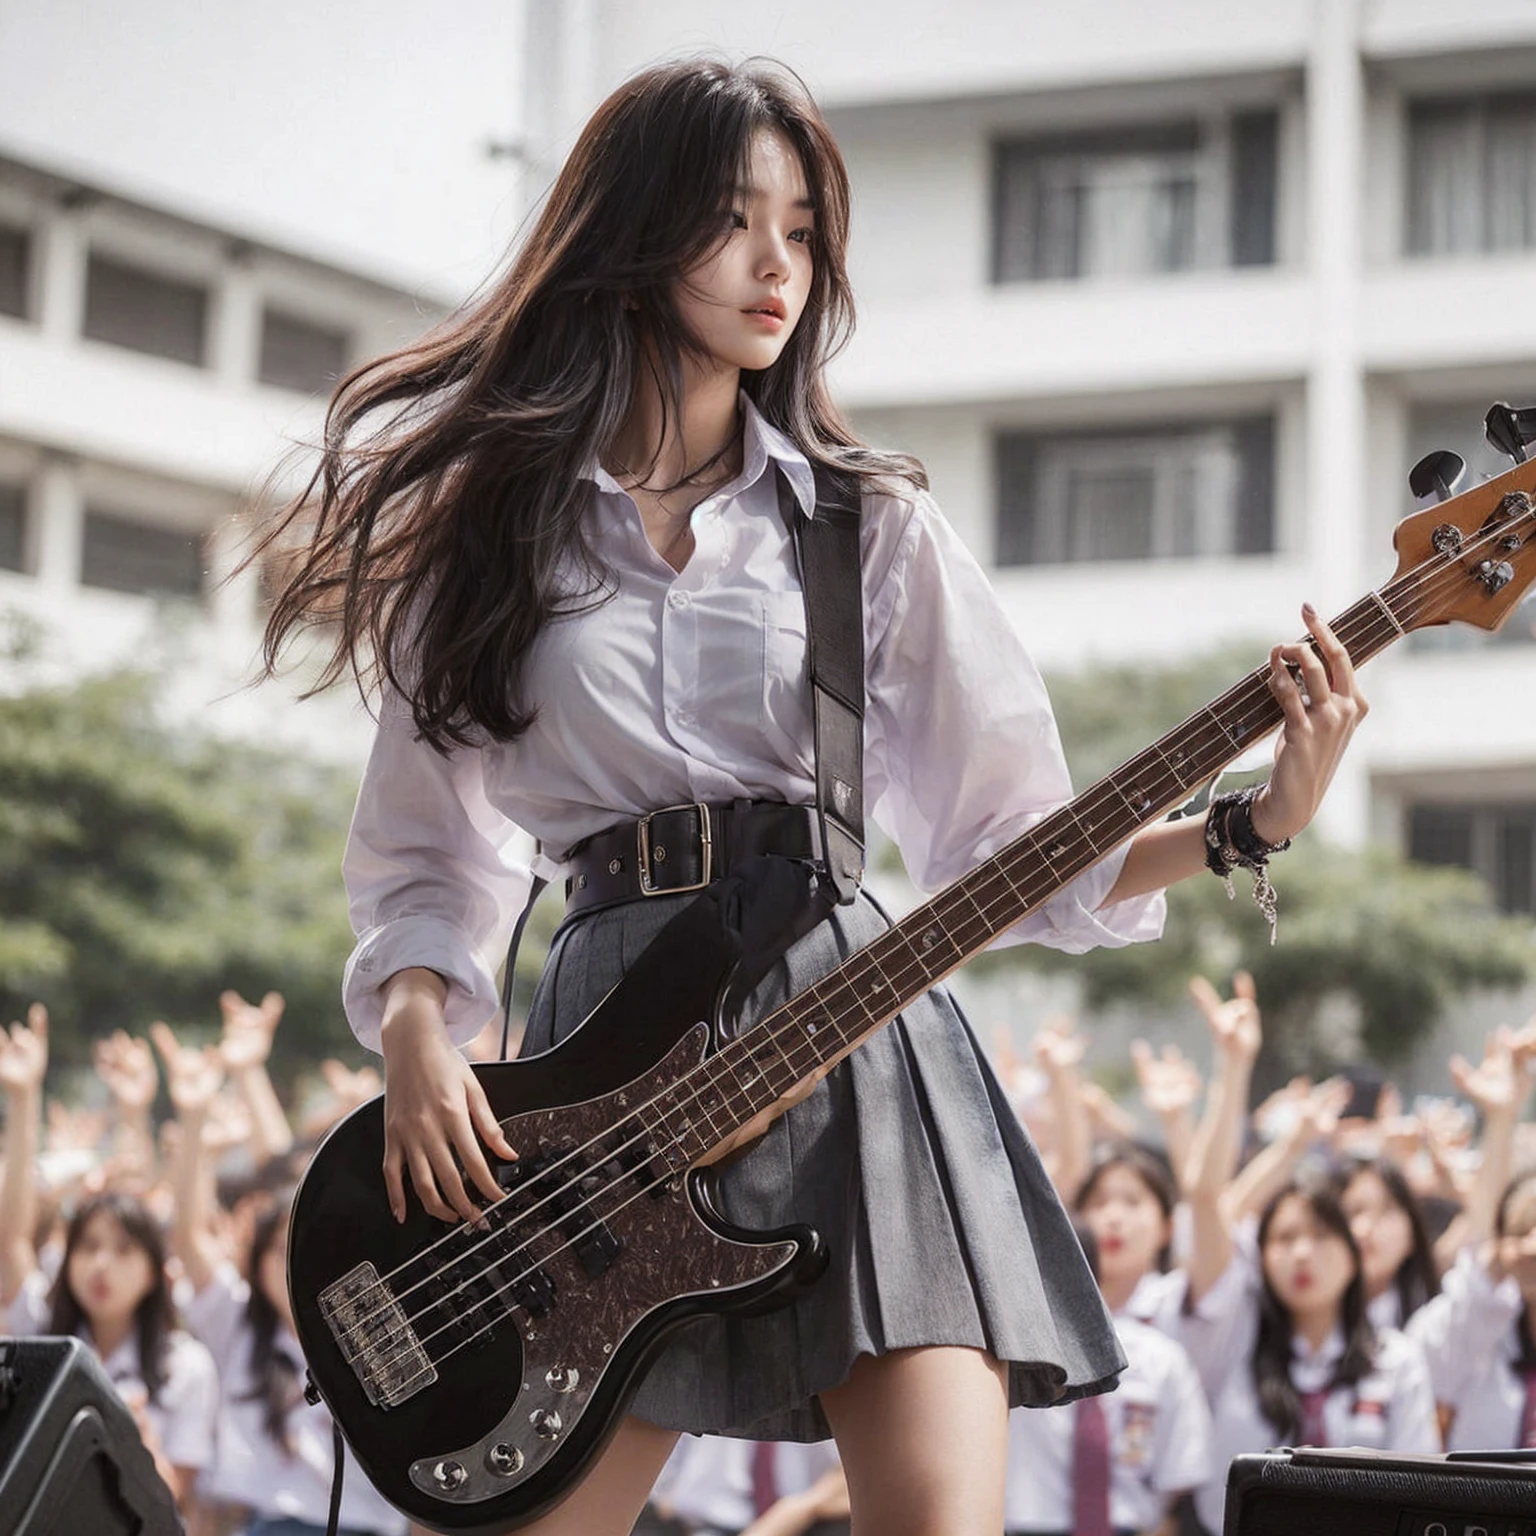 英語への翻訳はこちら:

"美しい韓国人の女の子, 18歳, 高い, 色白の, 中くらいの胸, ベースギターを弾いている, スラバヤ市の高校のステージで演奏する, 多くの小学生が見守る, ハイカット , 白のシャツ, ベルト, そしてグレーのスカート, 飛び回る, ヘドバン, 傑作, リアルなイメージ, 高解像度, 4K, 詳細な顔, 細かい目, 乱れた髪型"